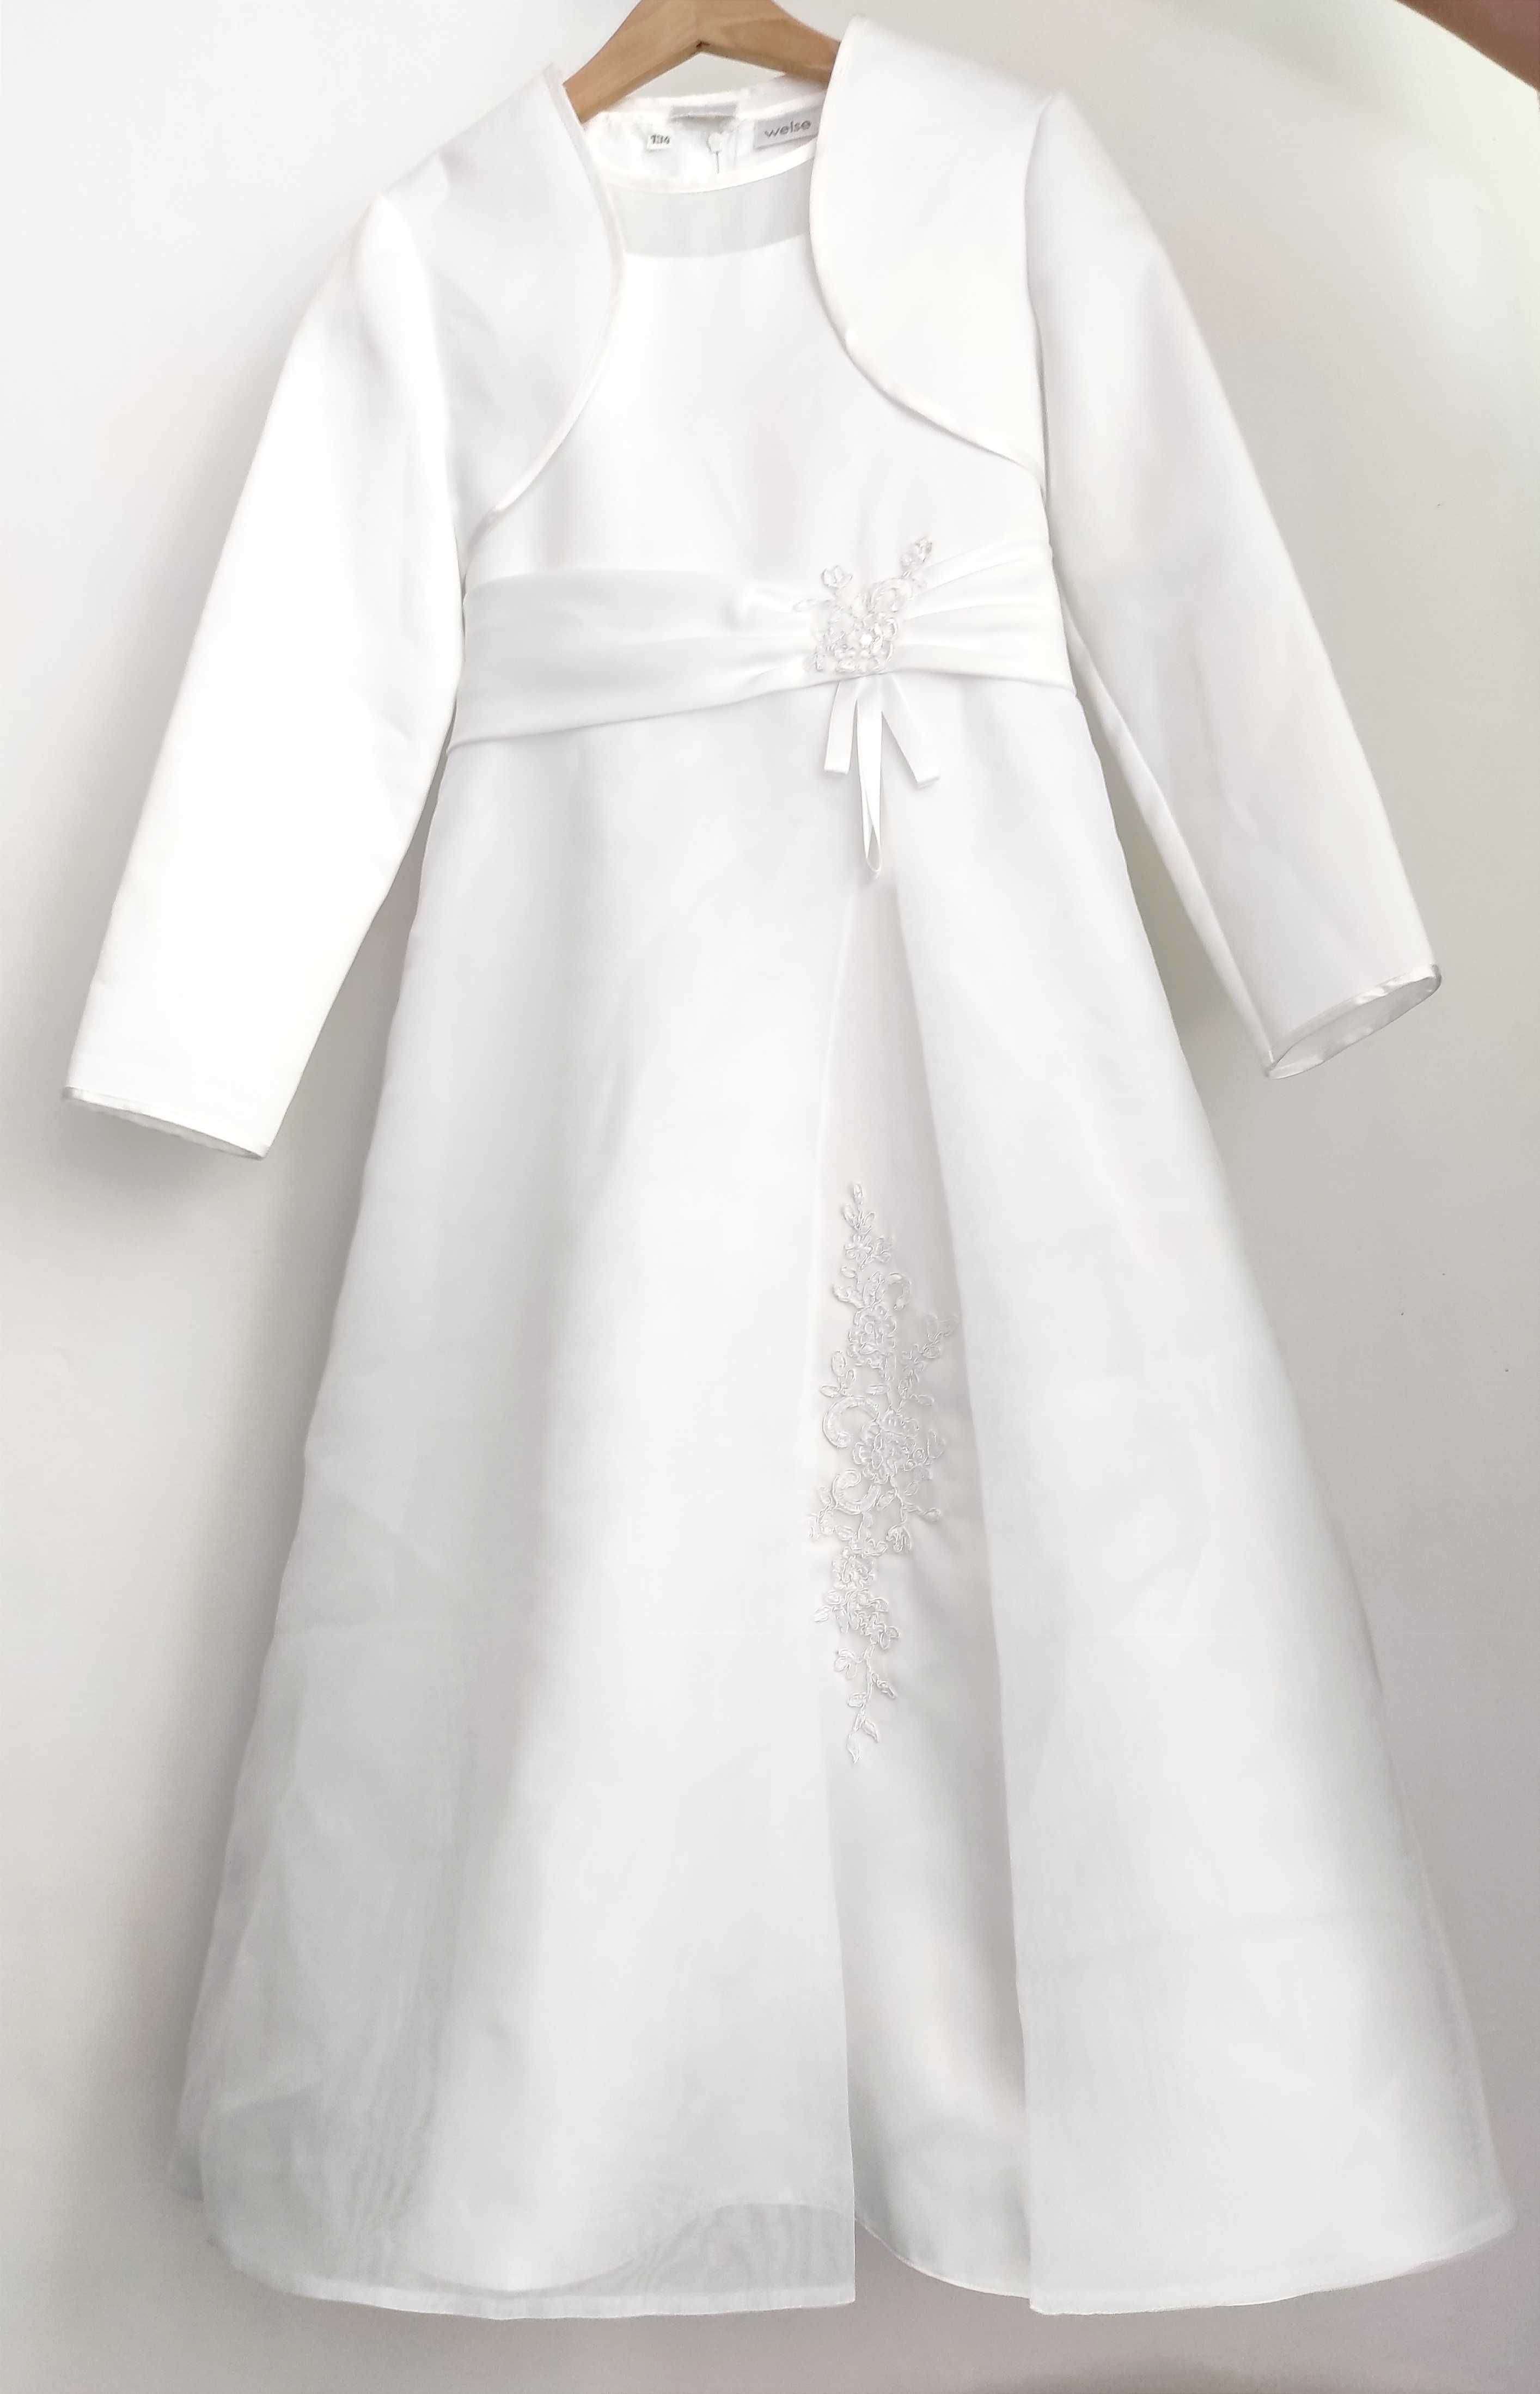 Śliczna sukienka biała komunijna i bolerko marki Weise 134 cm